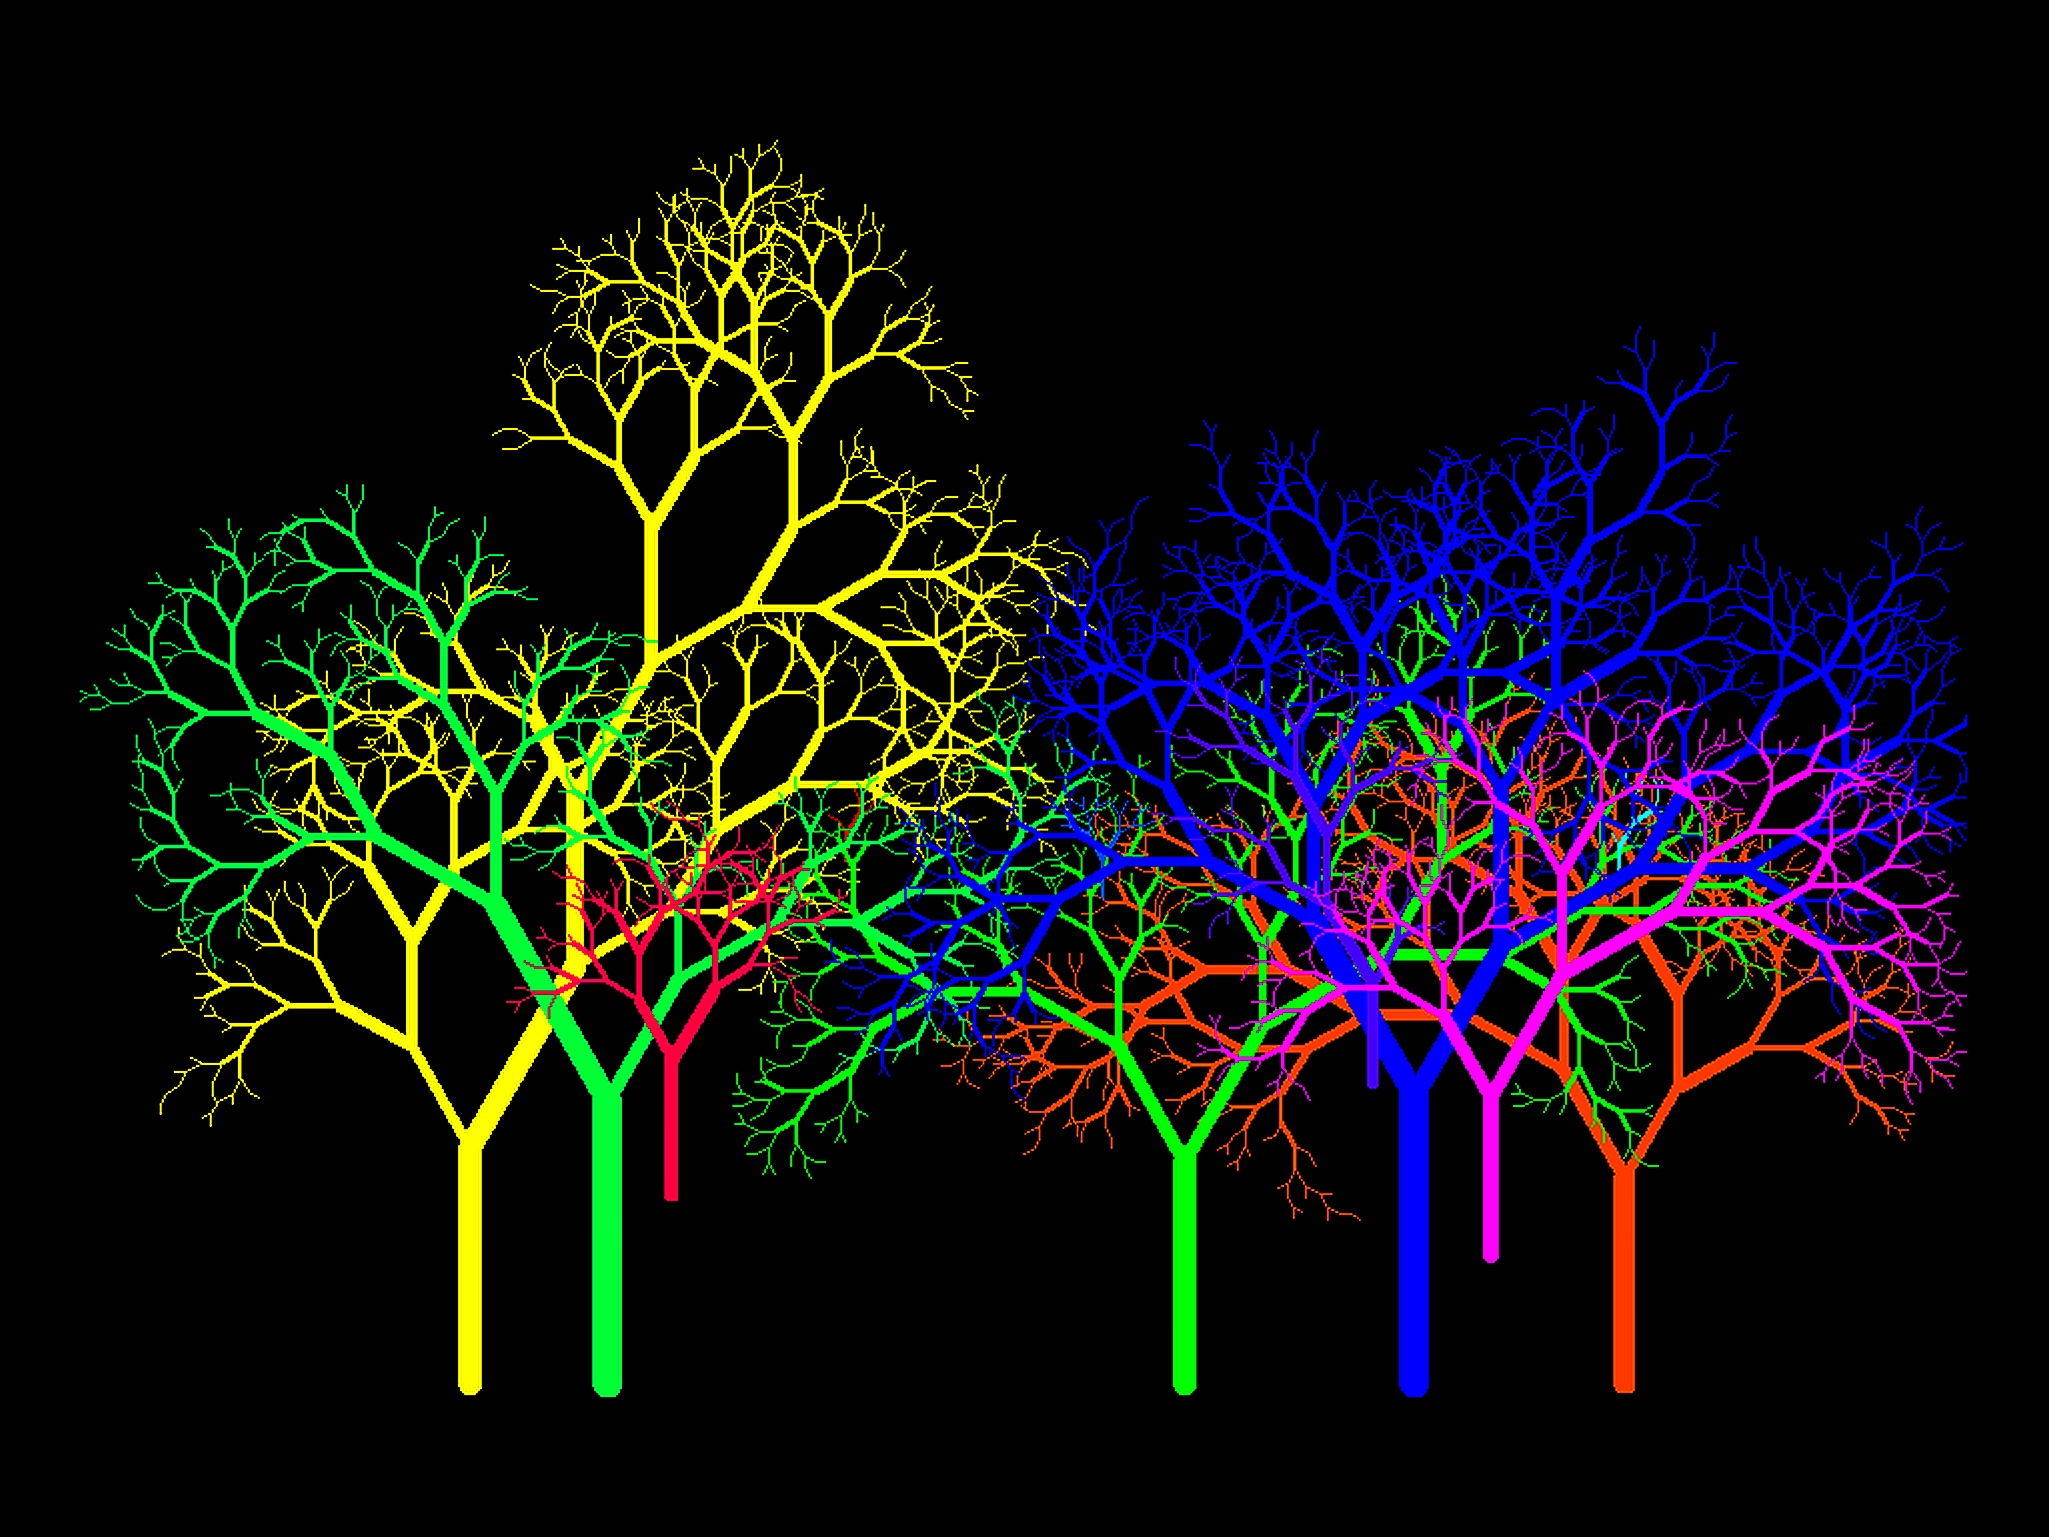 trees, fractals, acid, colors - desktop wallpaper